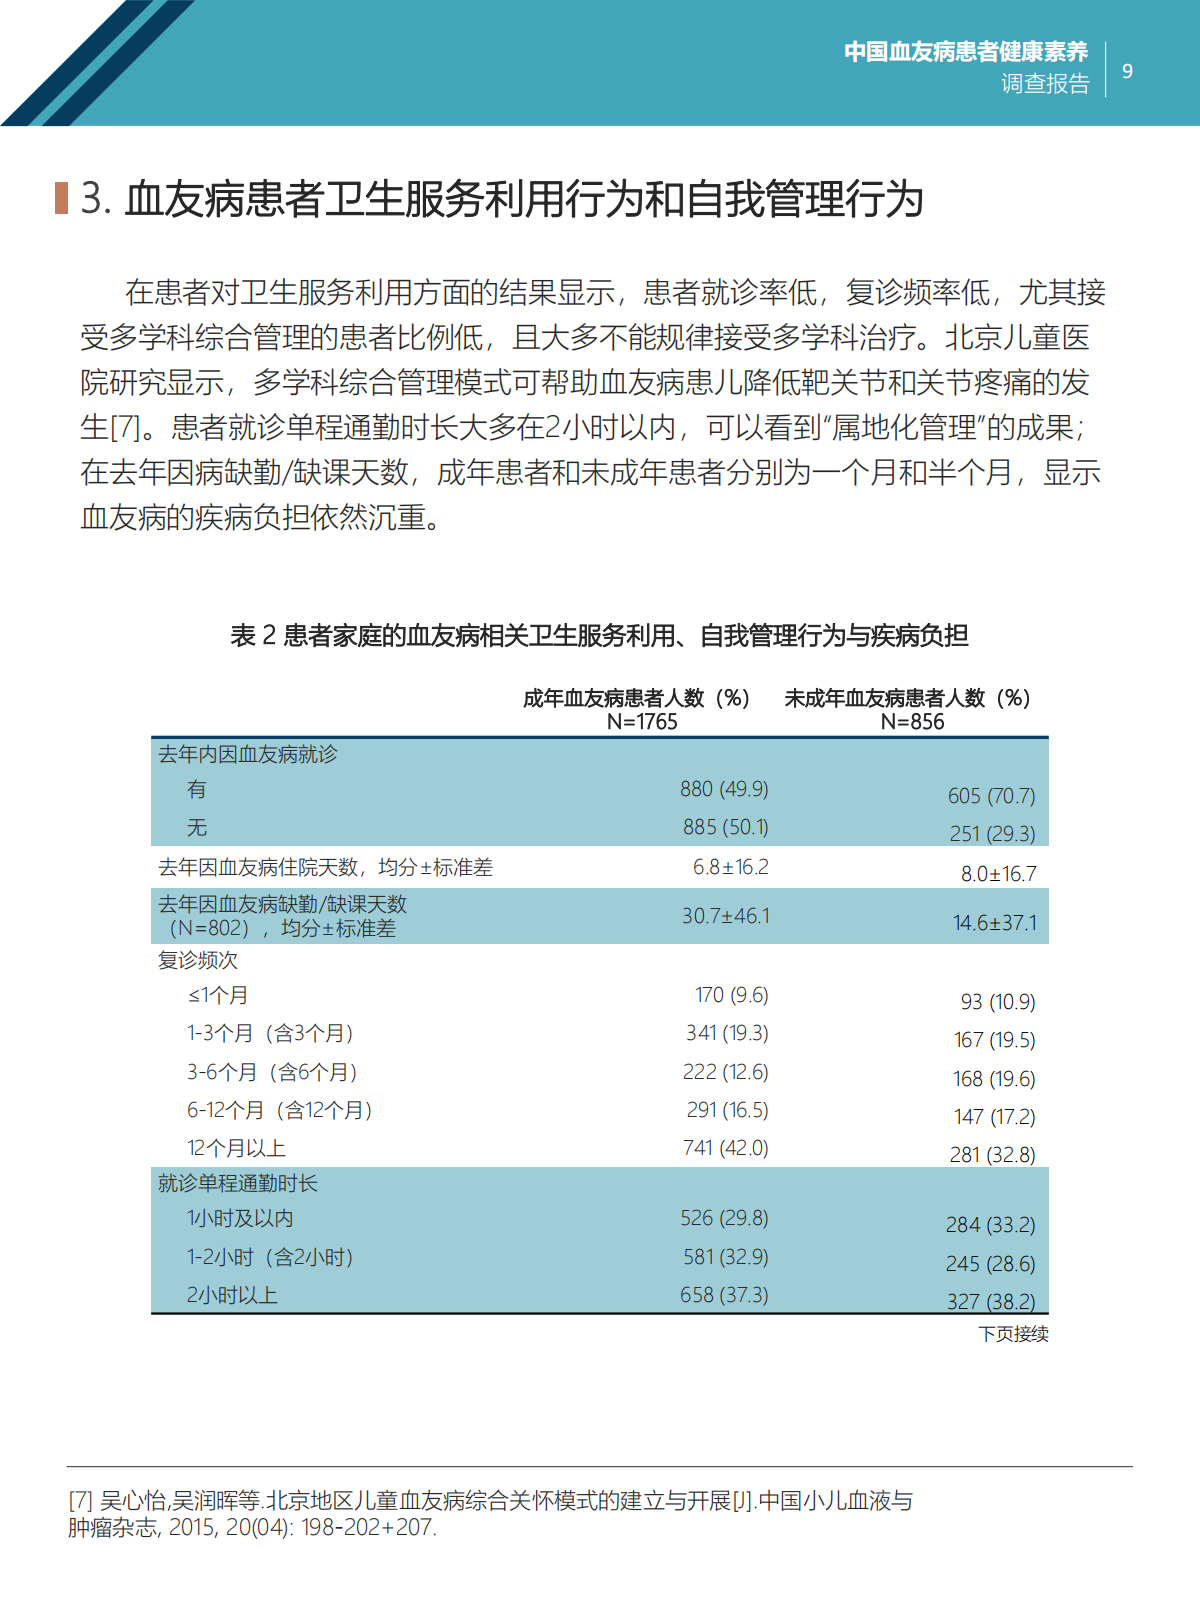 中国血友病患者健康素养调查报告 Final 20240411_09.png